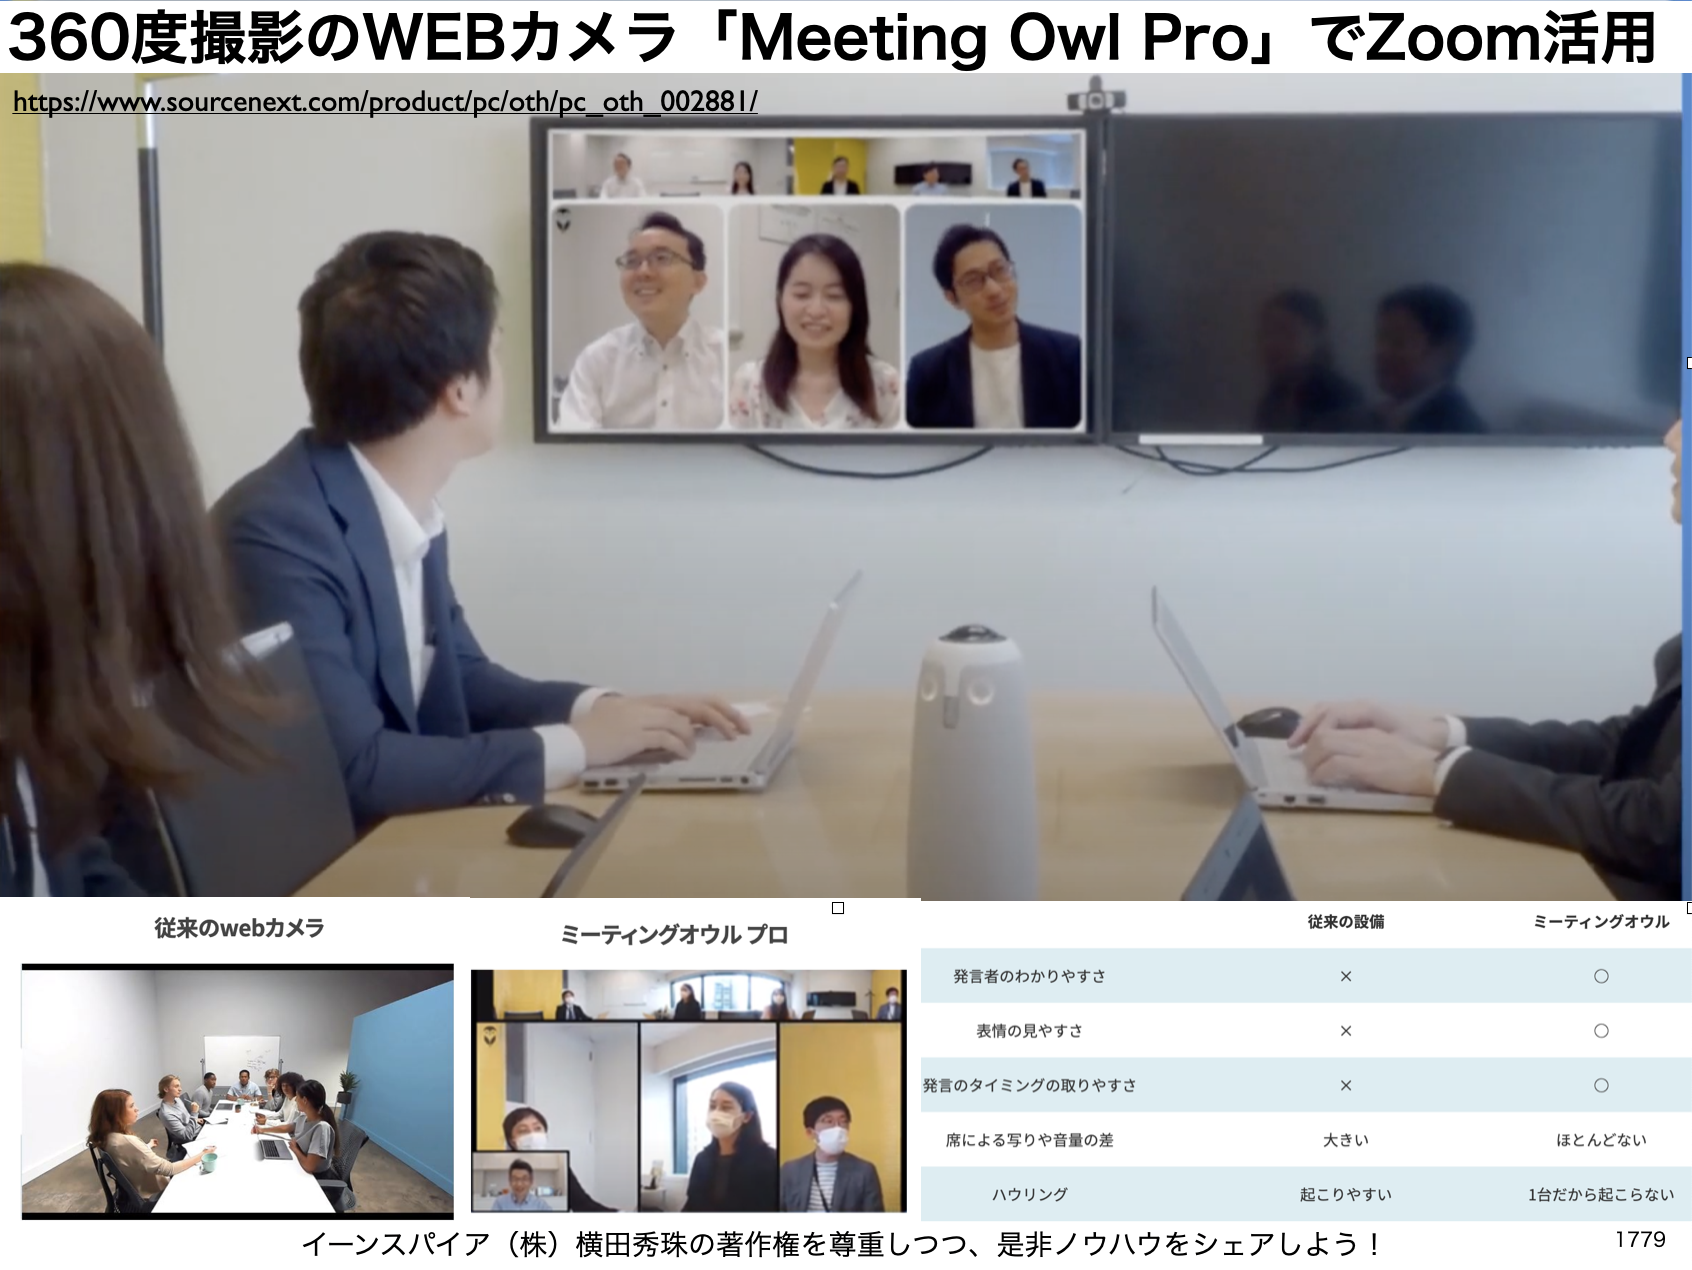 360度撮影WEBカメラ｢Meeting Owl Pro｣Zoom会議は激変